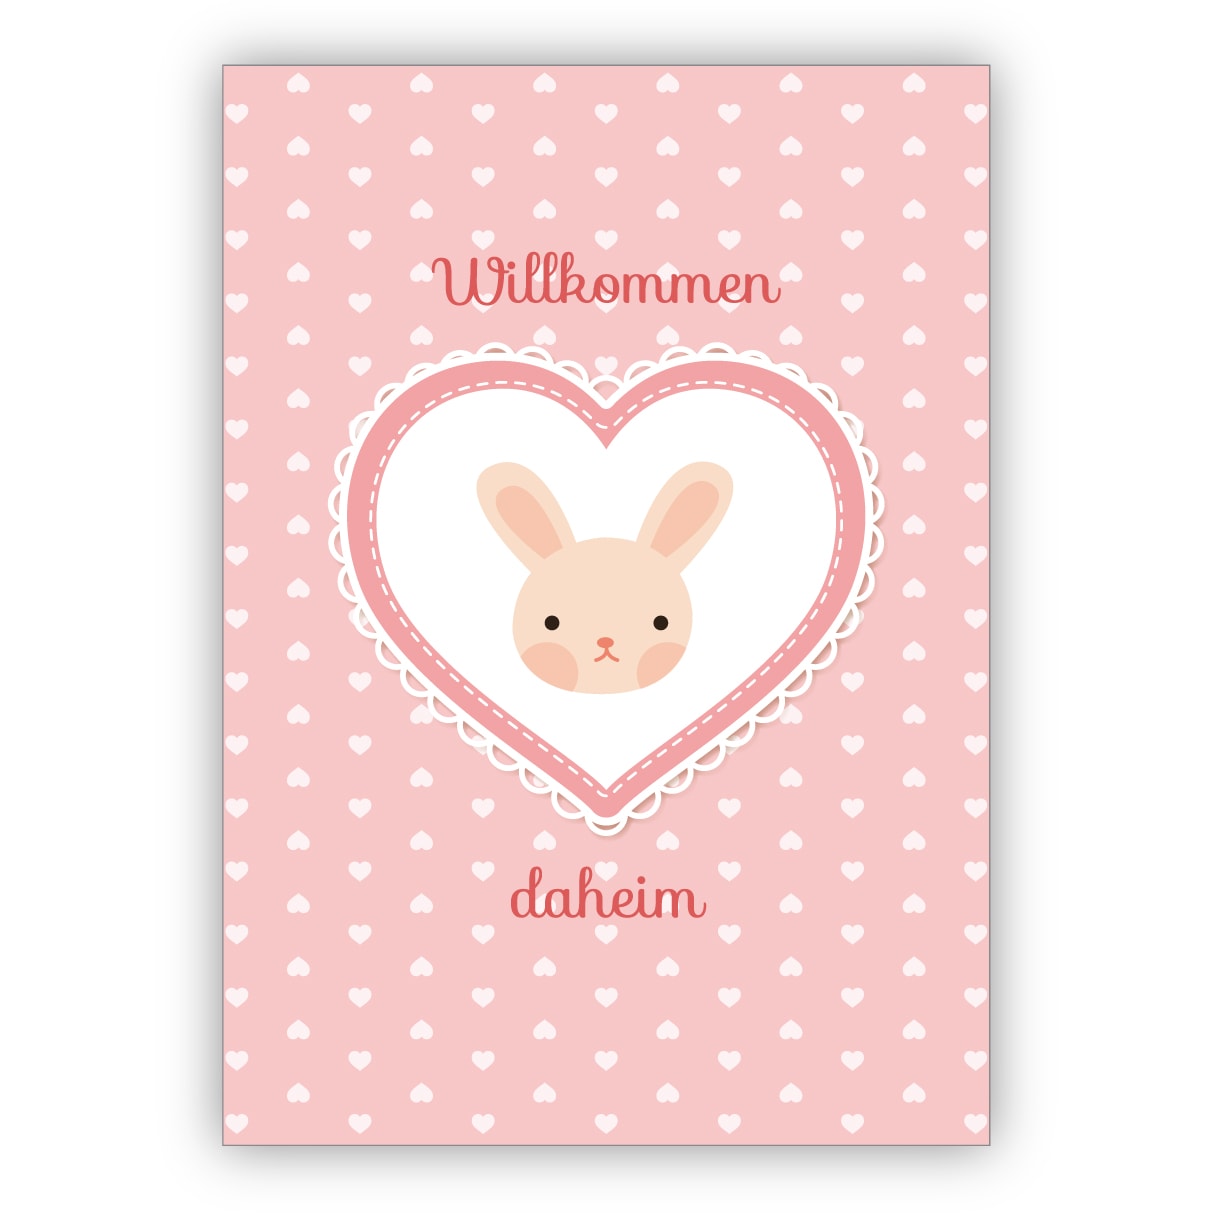 süße rosa Babykarte Glückwunschkarte mit Häschen im Herz für Baby Mädchen zur Geburt: Willkommen daheim